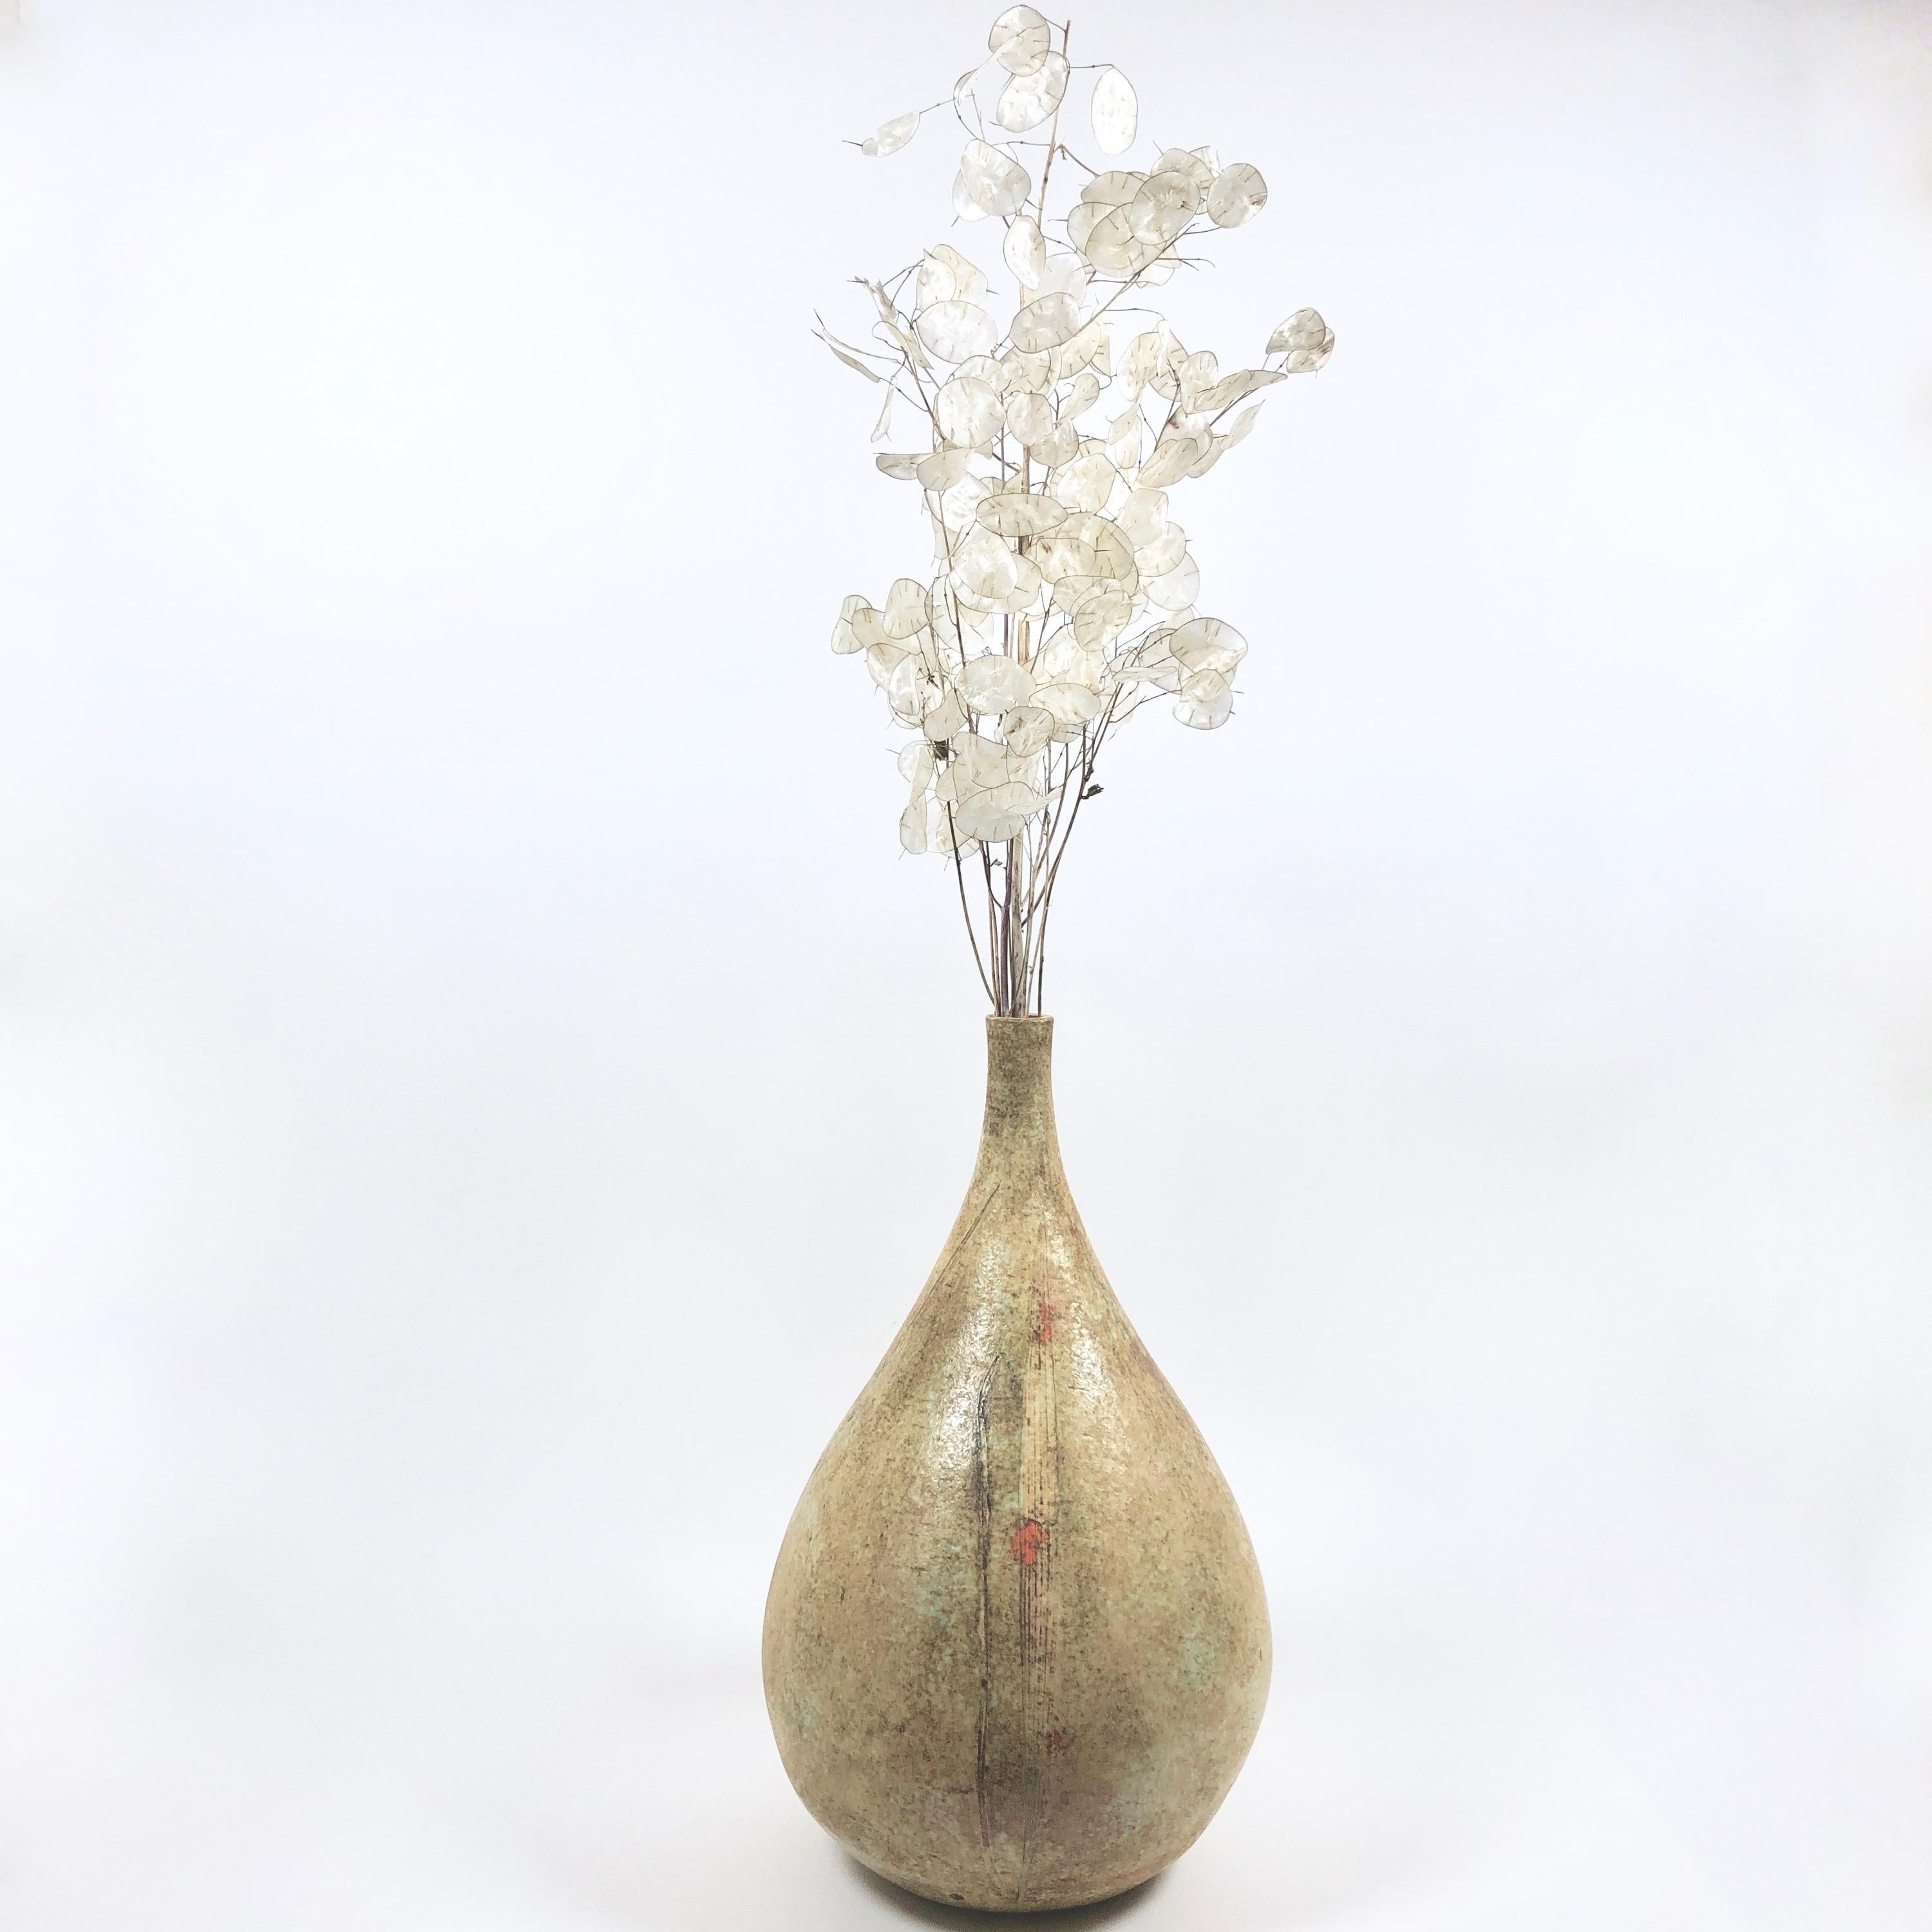 2 Potiers 'Deux Potiers' Large Ceramic Table Lamp or Decorative Vase For Sale 2